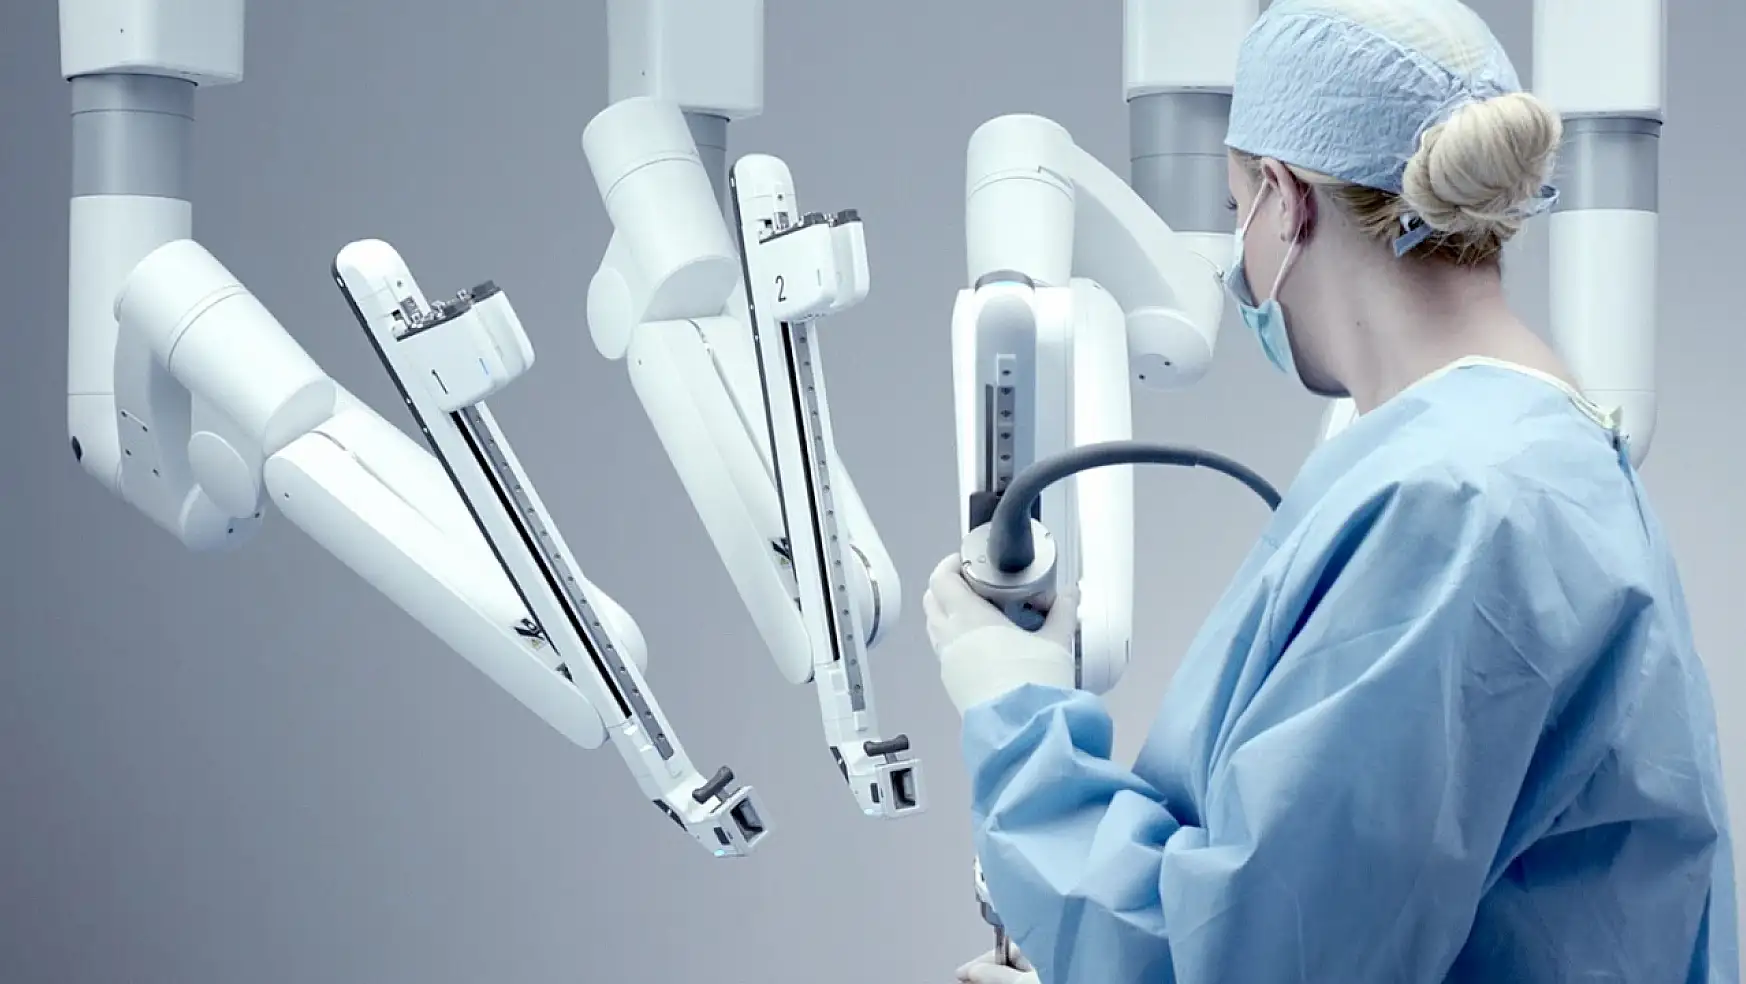 Kolon kanserine çözüm: Robotik cerrahi!